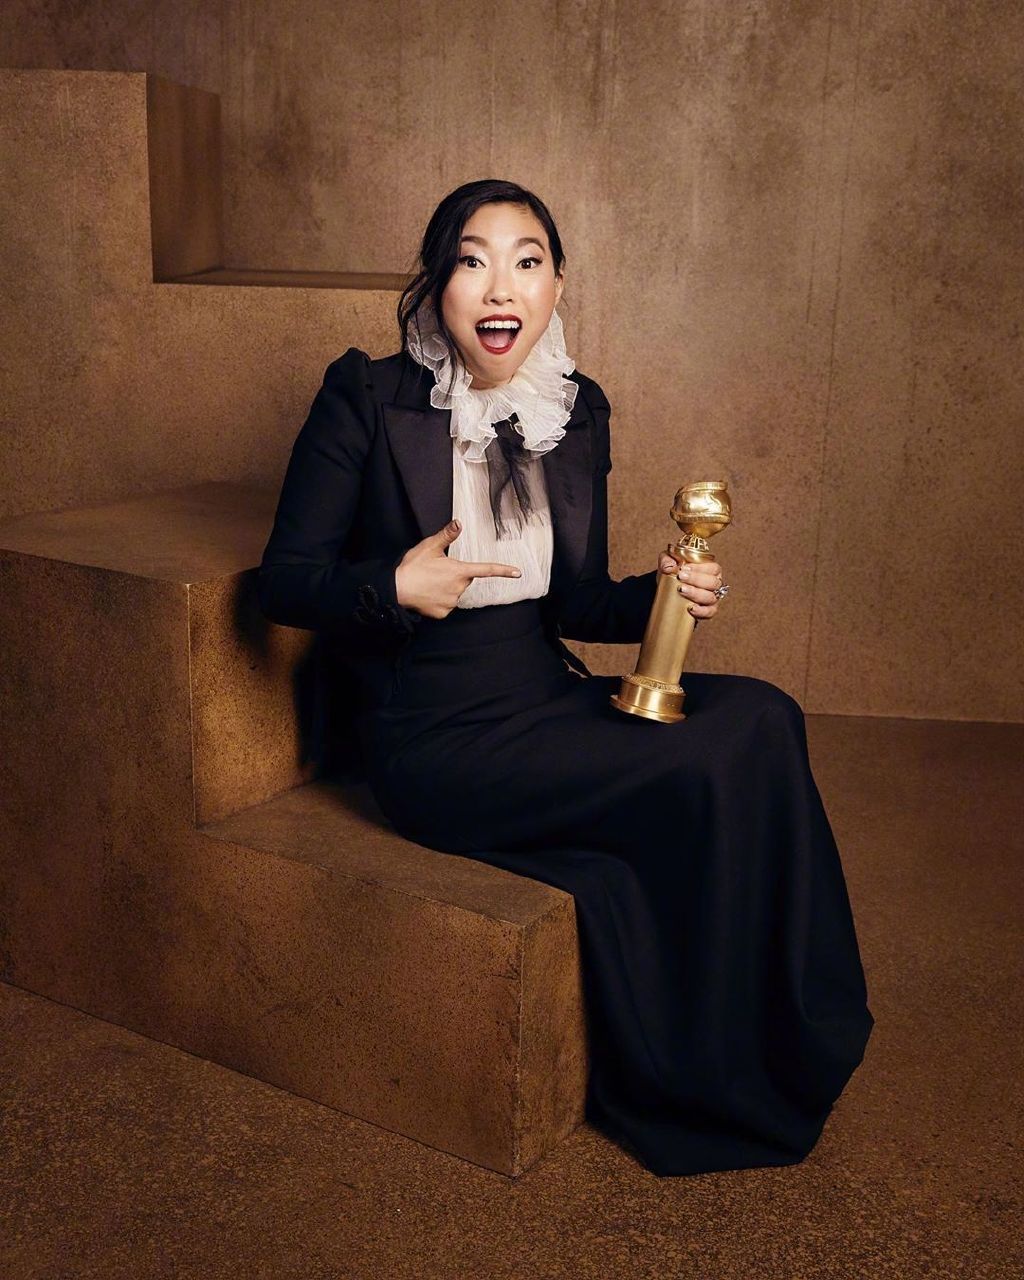  奥卡菲娜成为首个拿下金球奖电影类最佳女主角的亚裔演员。